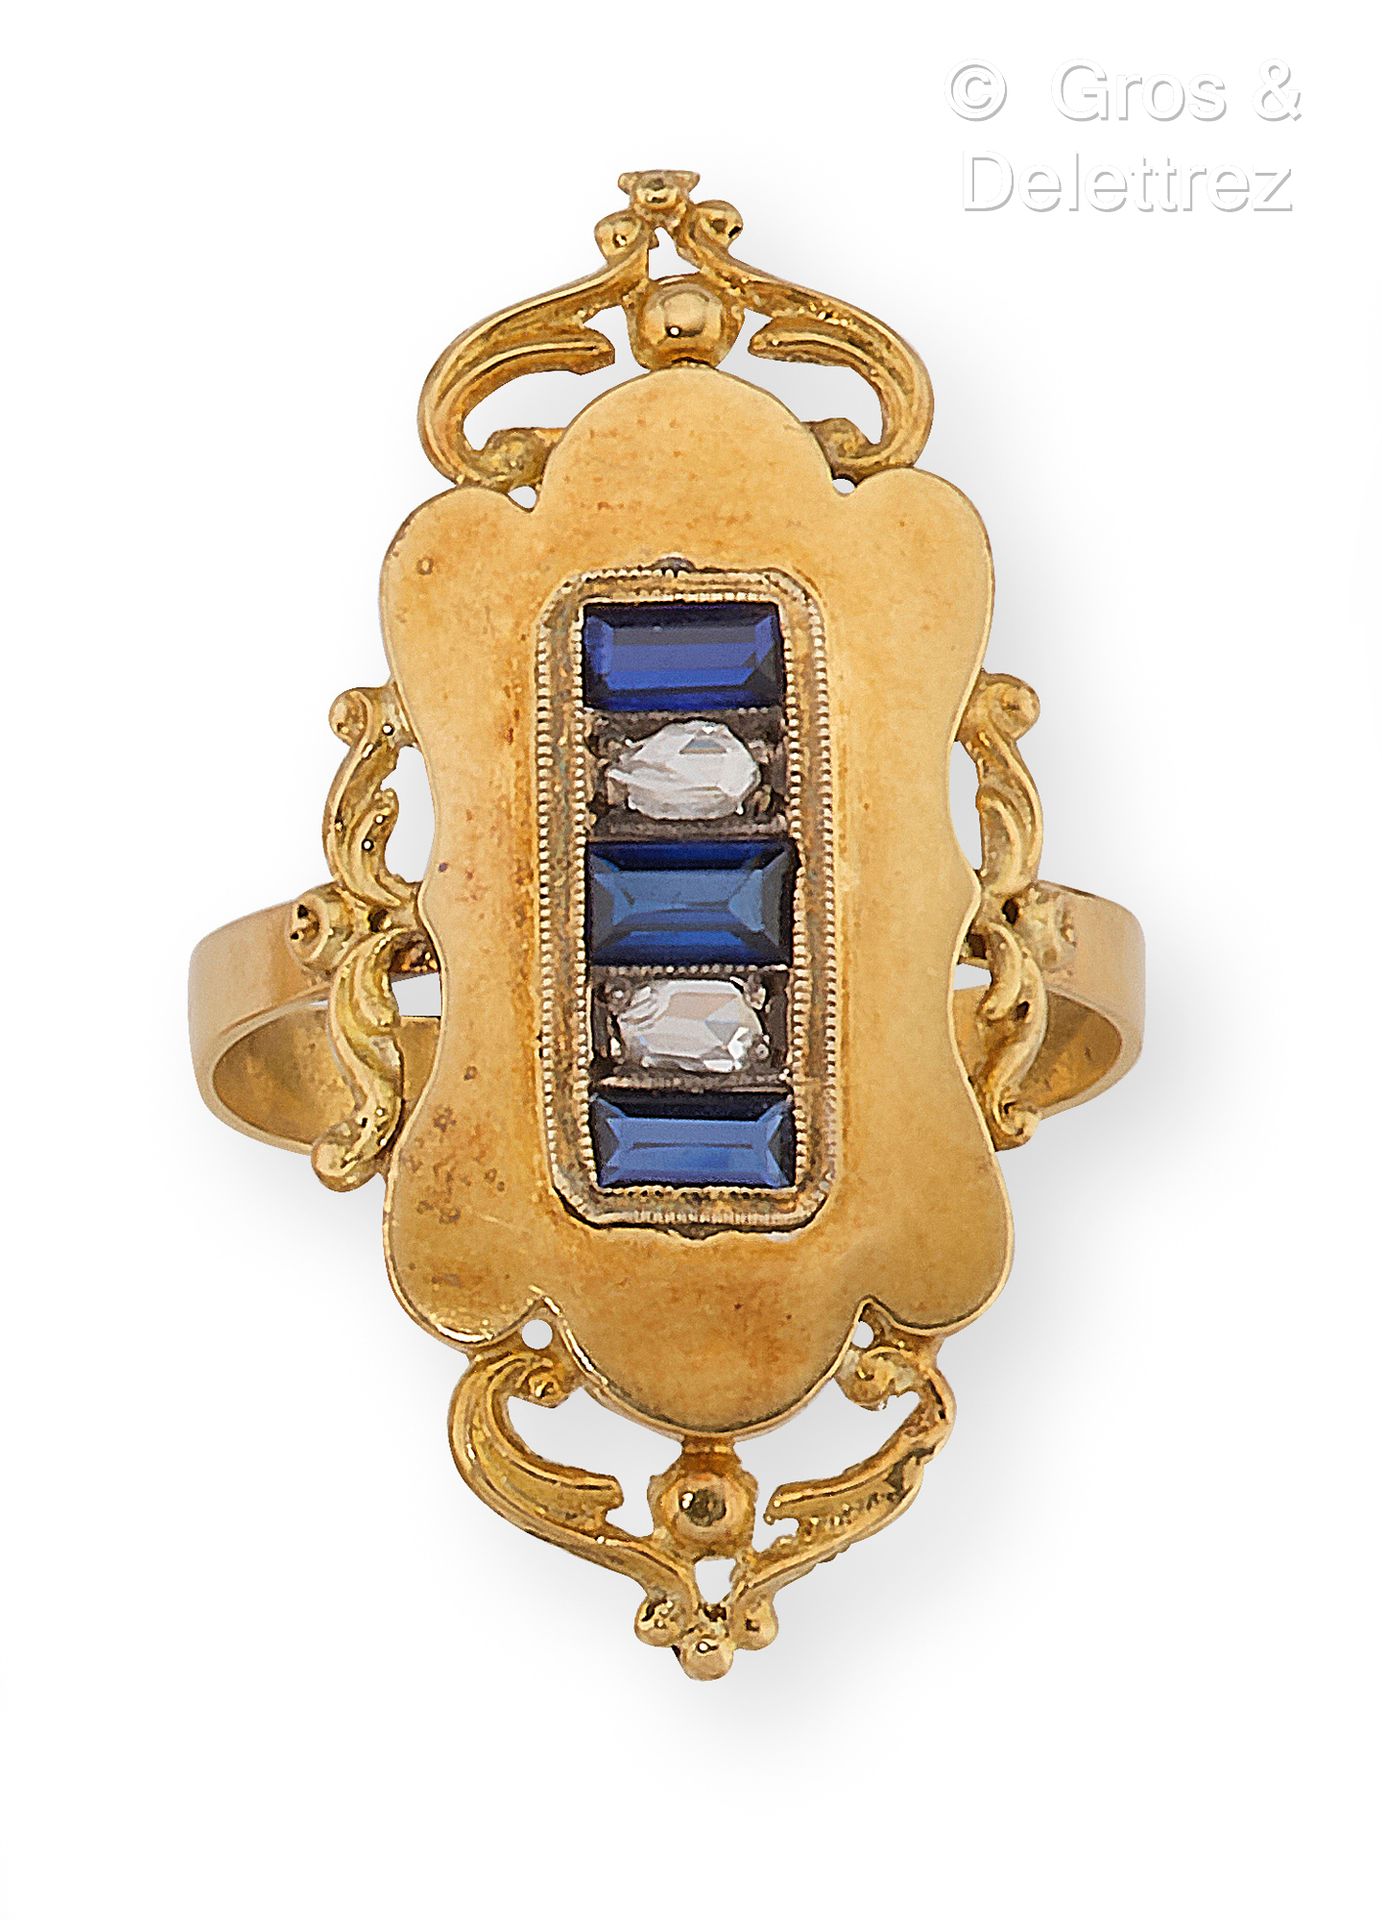 Null 黄金戒指上镶嵌着冠状的玫瑰式切割钻石，与校准的蓝色宝石交替使用。手指大小：58。毛重：3.6克。